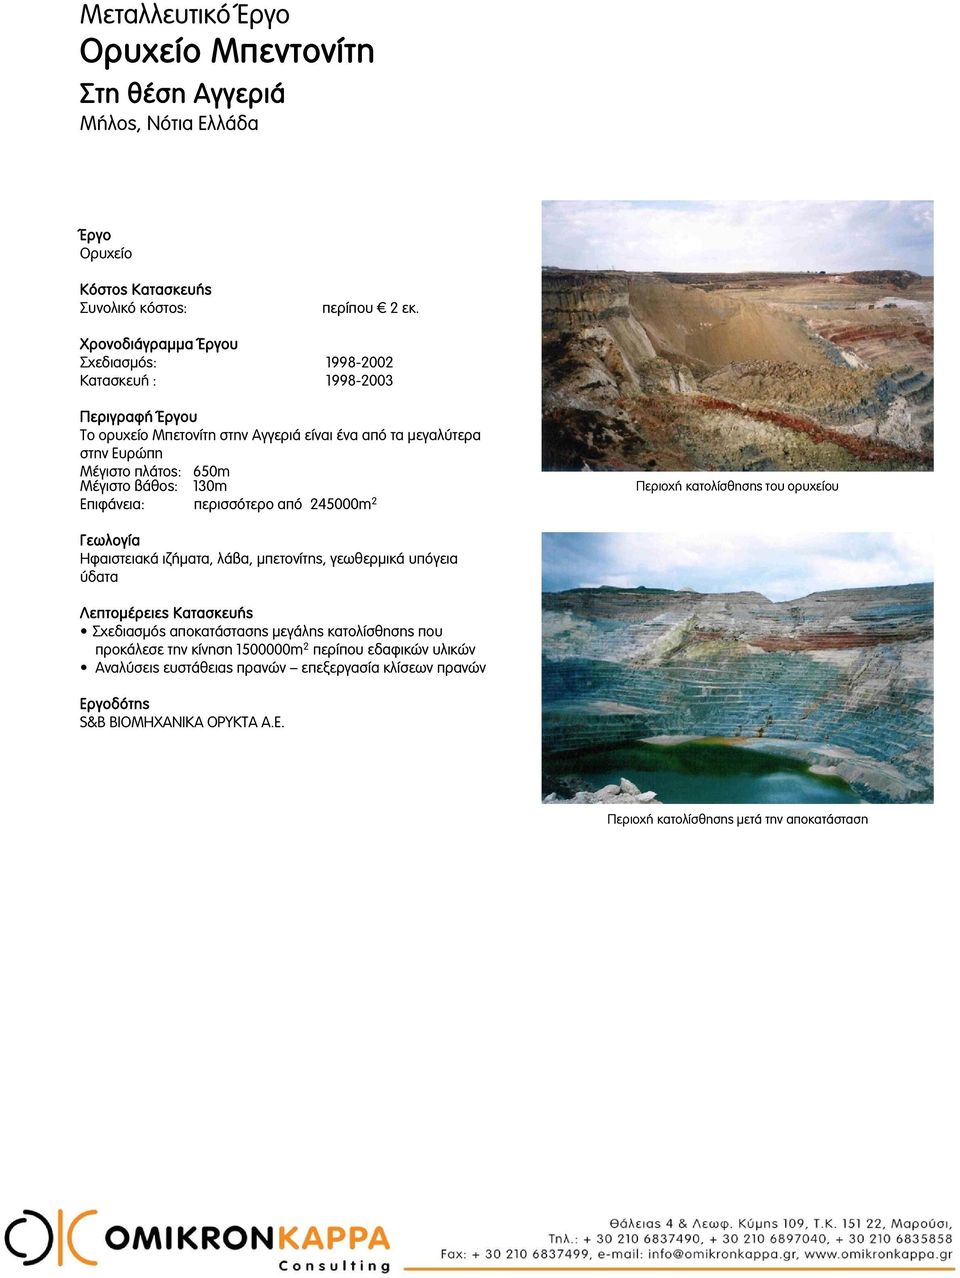 Μέγιστο βάθος: 130m Επιφάνεια: περισσότερο από 245000m 2 Περιοχή κατολίσθησης του ορυχείου Ηφαιστειακά ιζήματα, λάβα, μπετονίτης, γεωθερμικά υπόγεια ύδατα Λεπτομέρειες